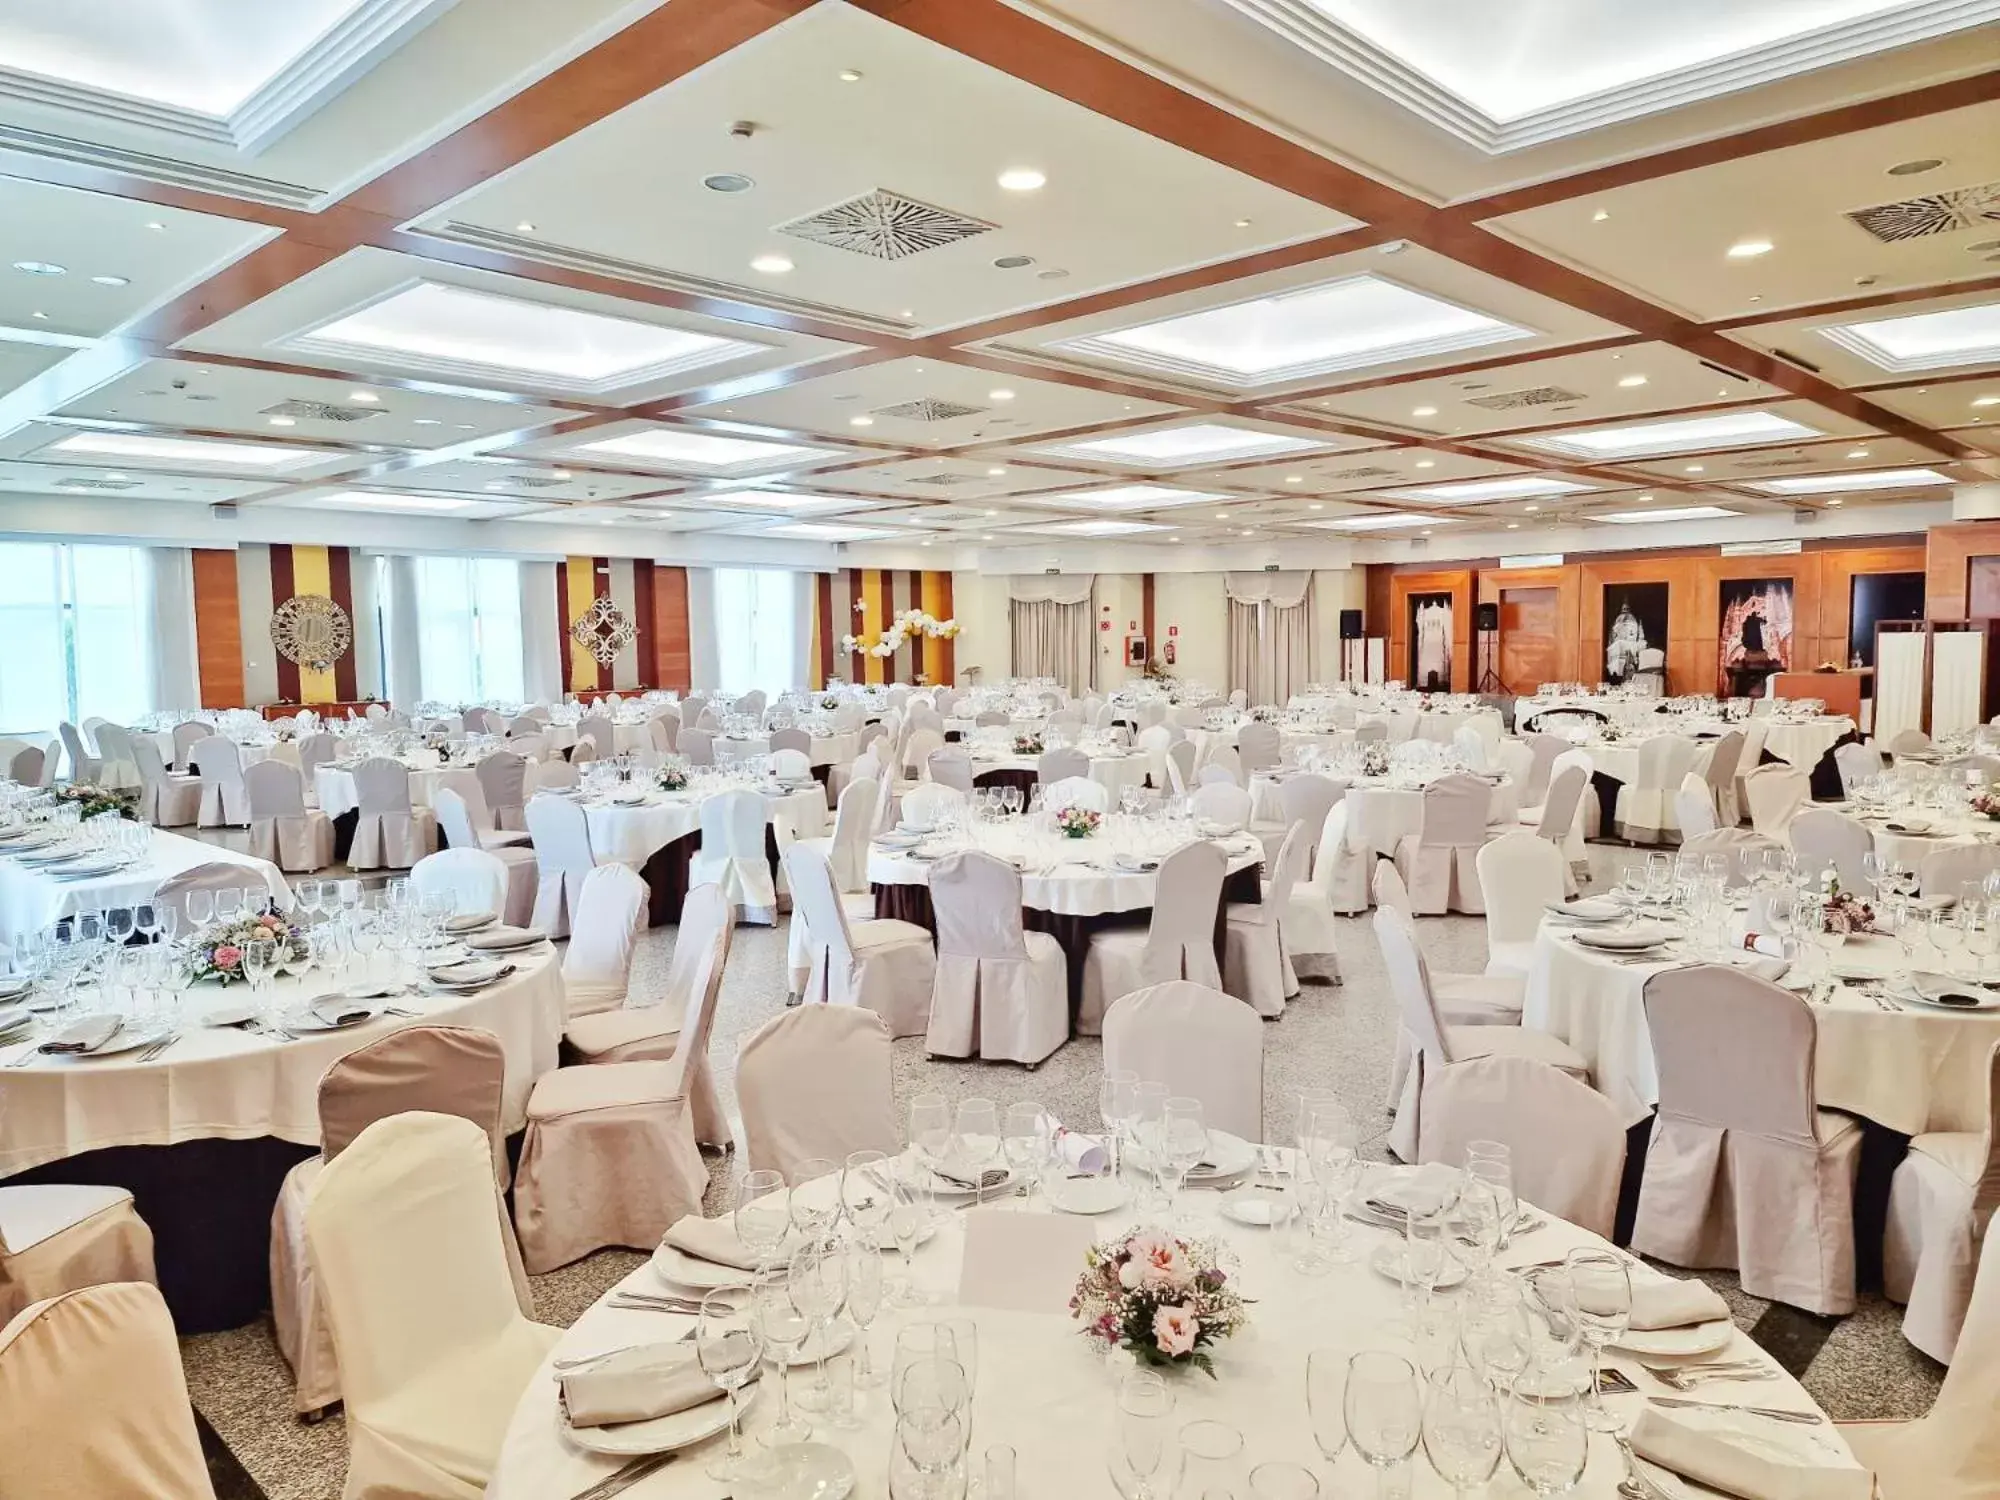 Meeting/conference room, Banquet Facilities in Hotel Bardo Recoletos Coco